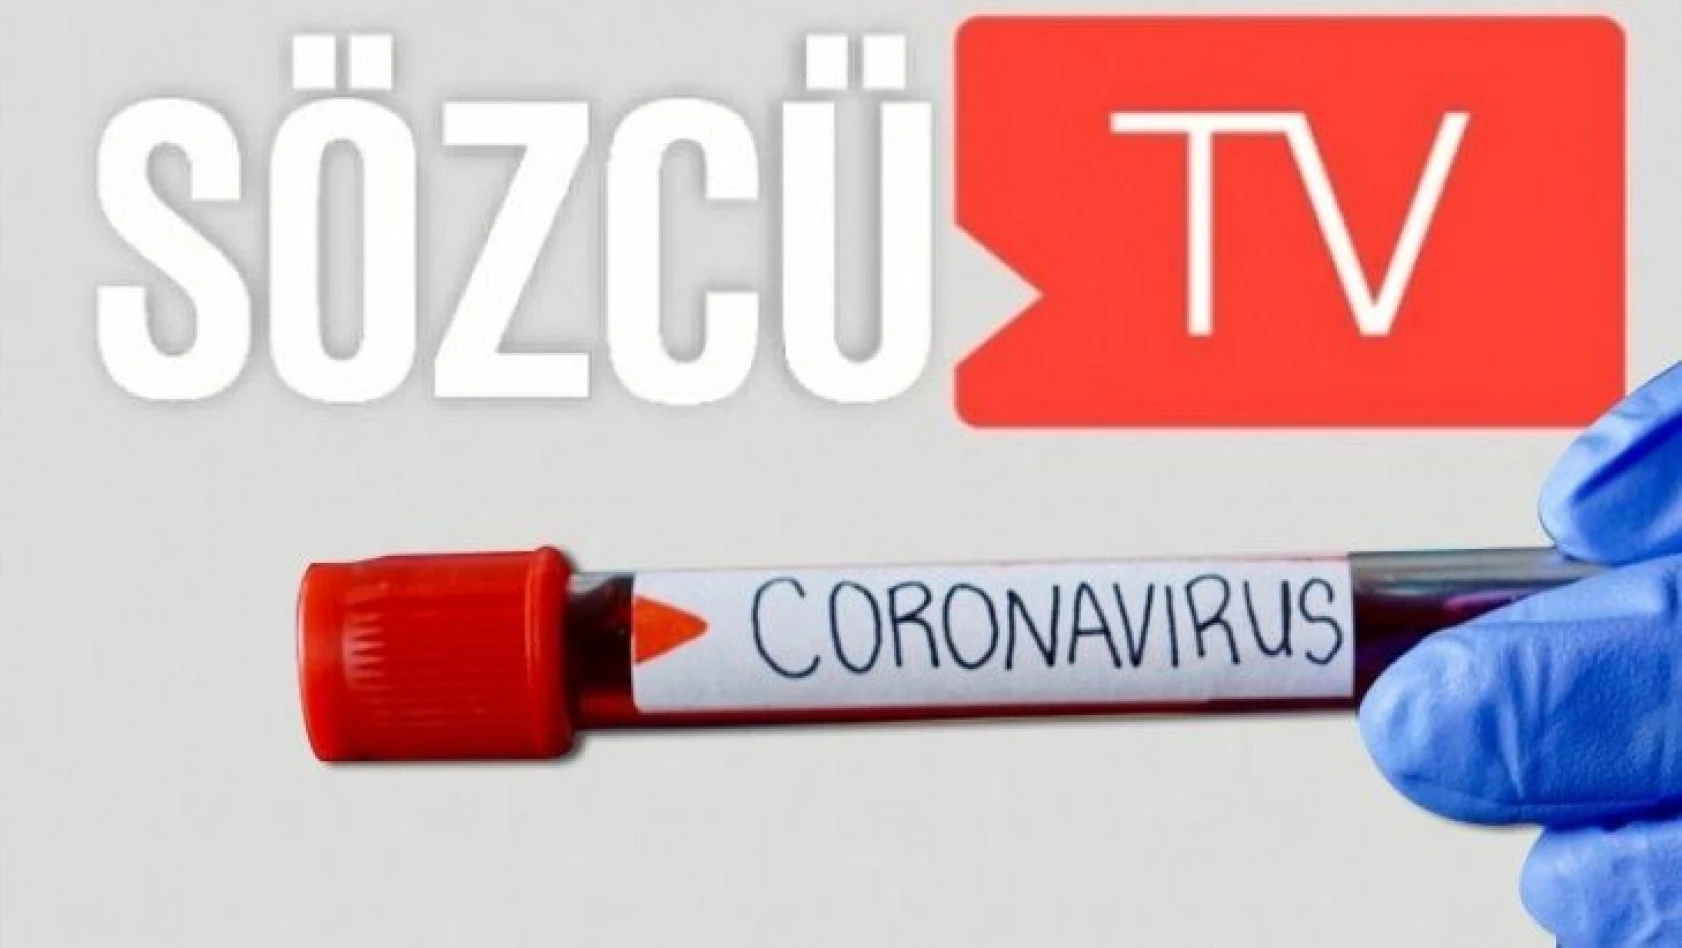 Sözcü TV'den flaş koronavirüs kararı